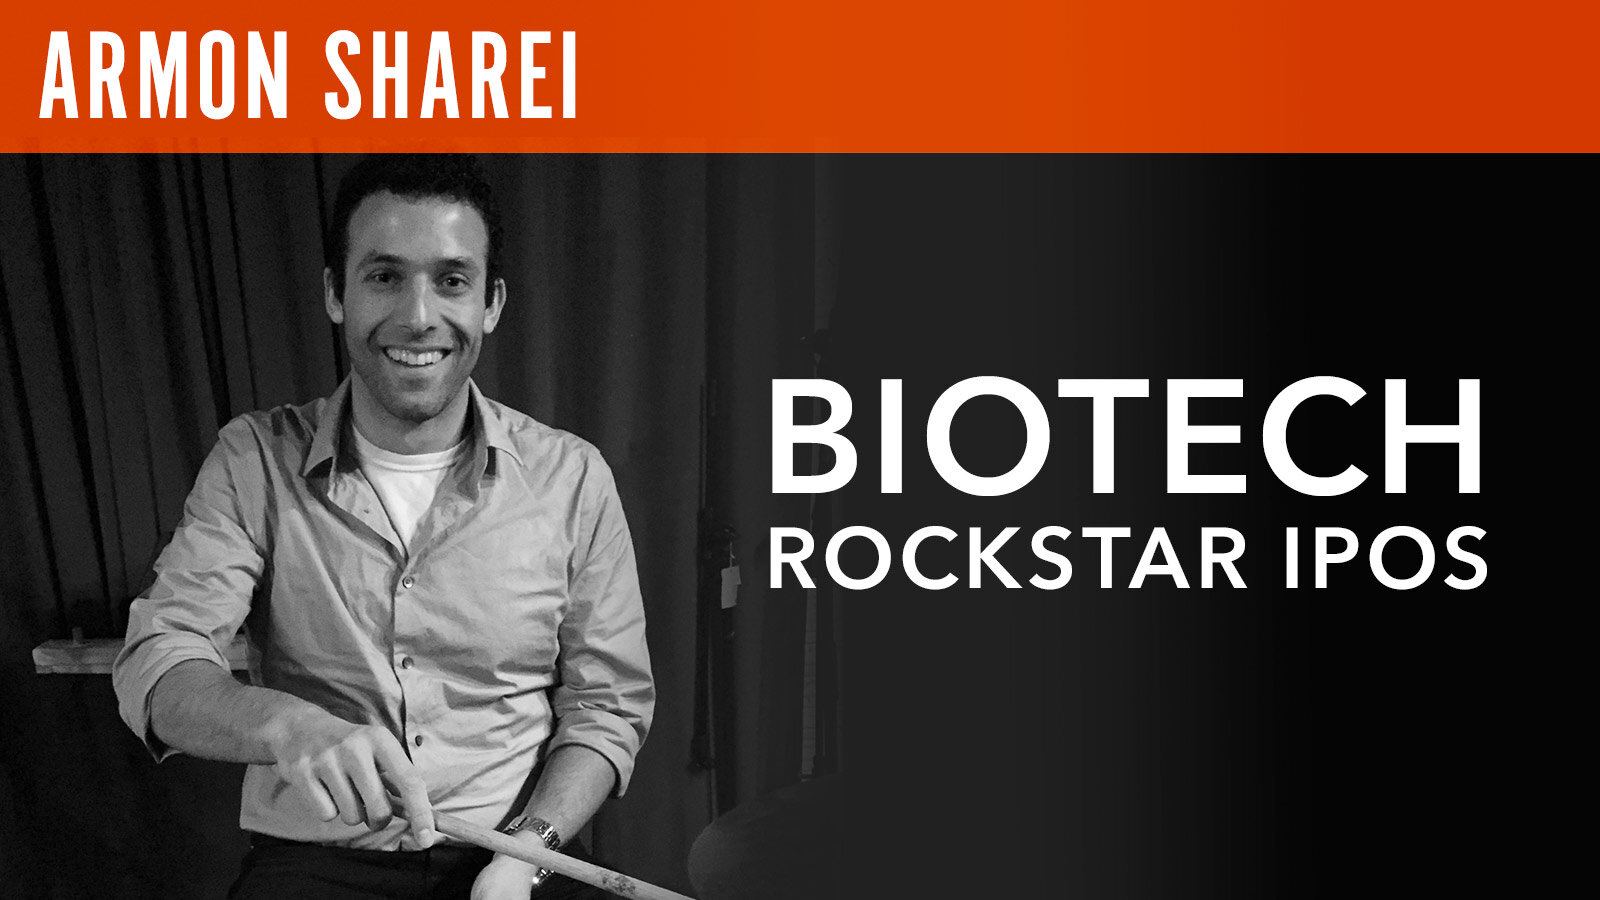 Armon Sharei, "Biotech Rockstar IPOs"